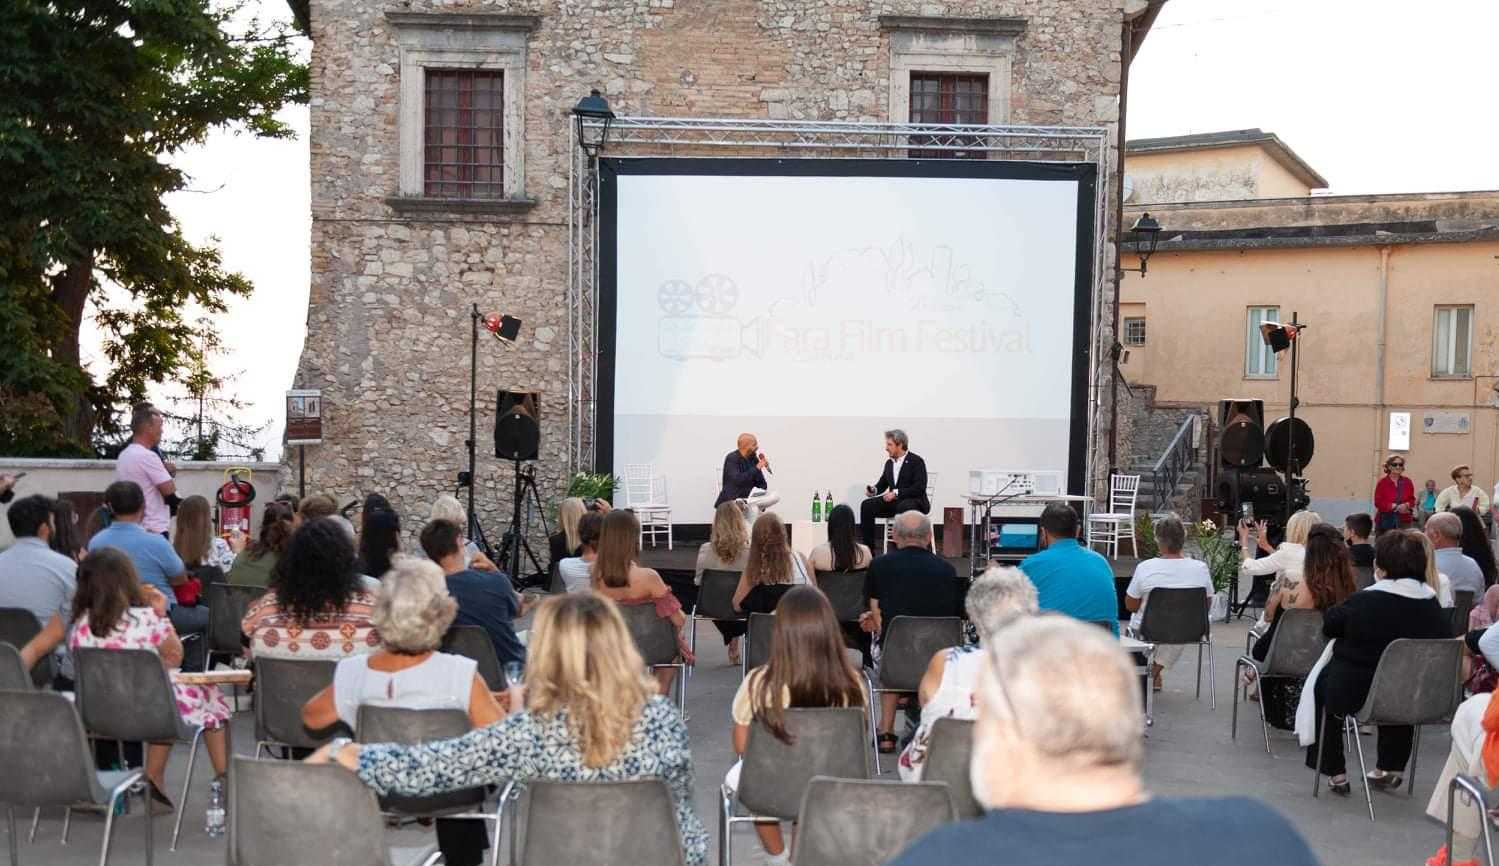 Foto 1 - Fara Film Festival, al via la terza edizione: tra gli ospiti Giancarlo Giannini e Riccardo Scamarcio 